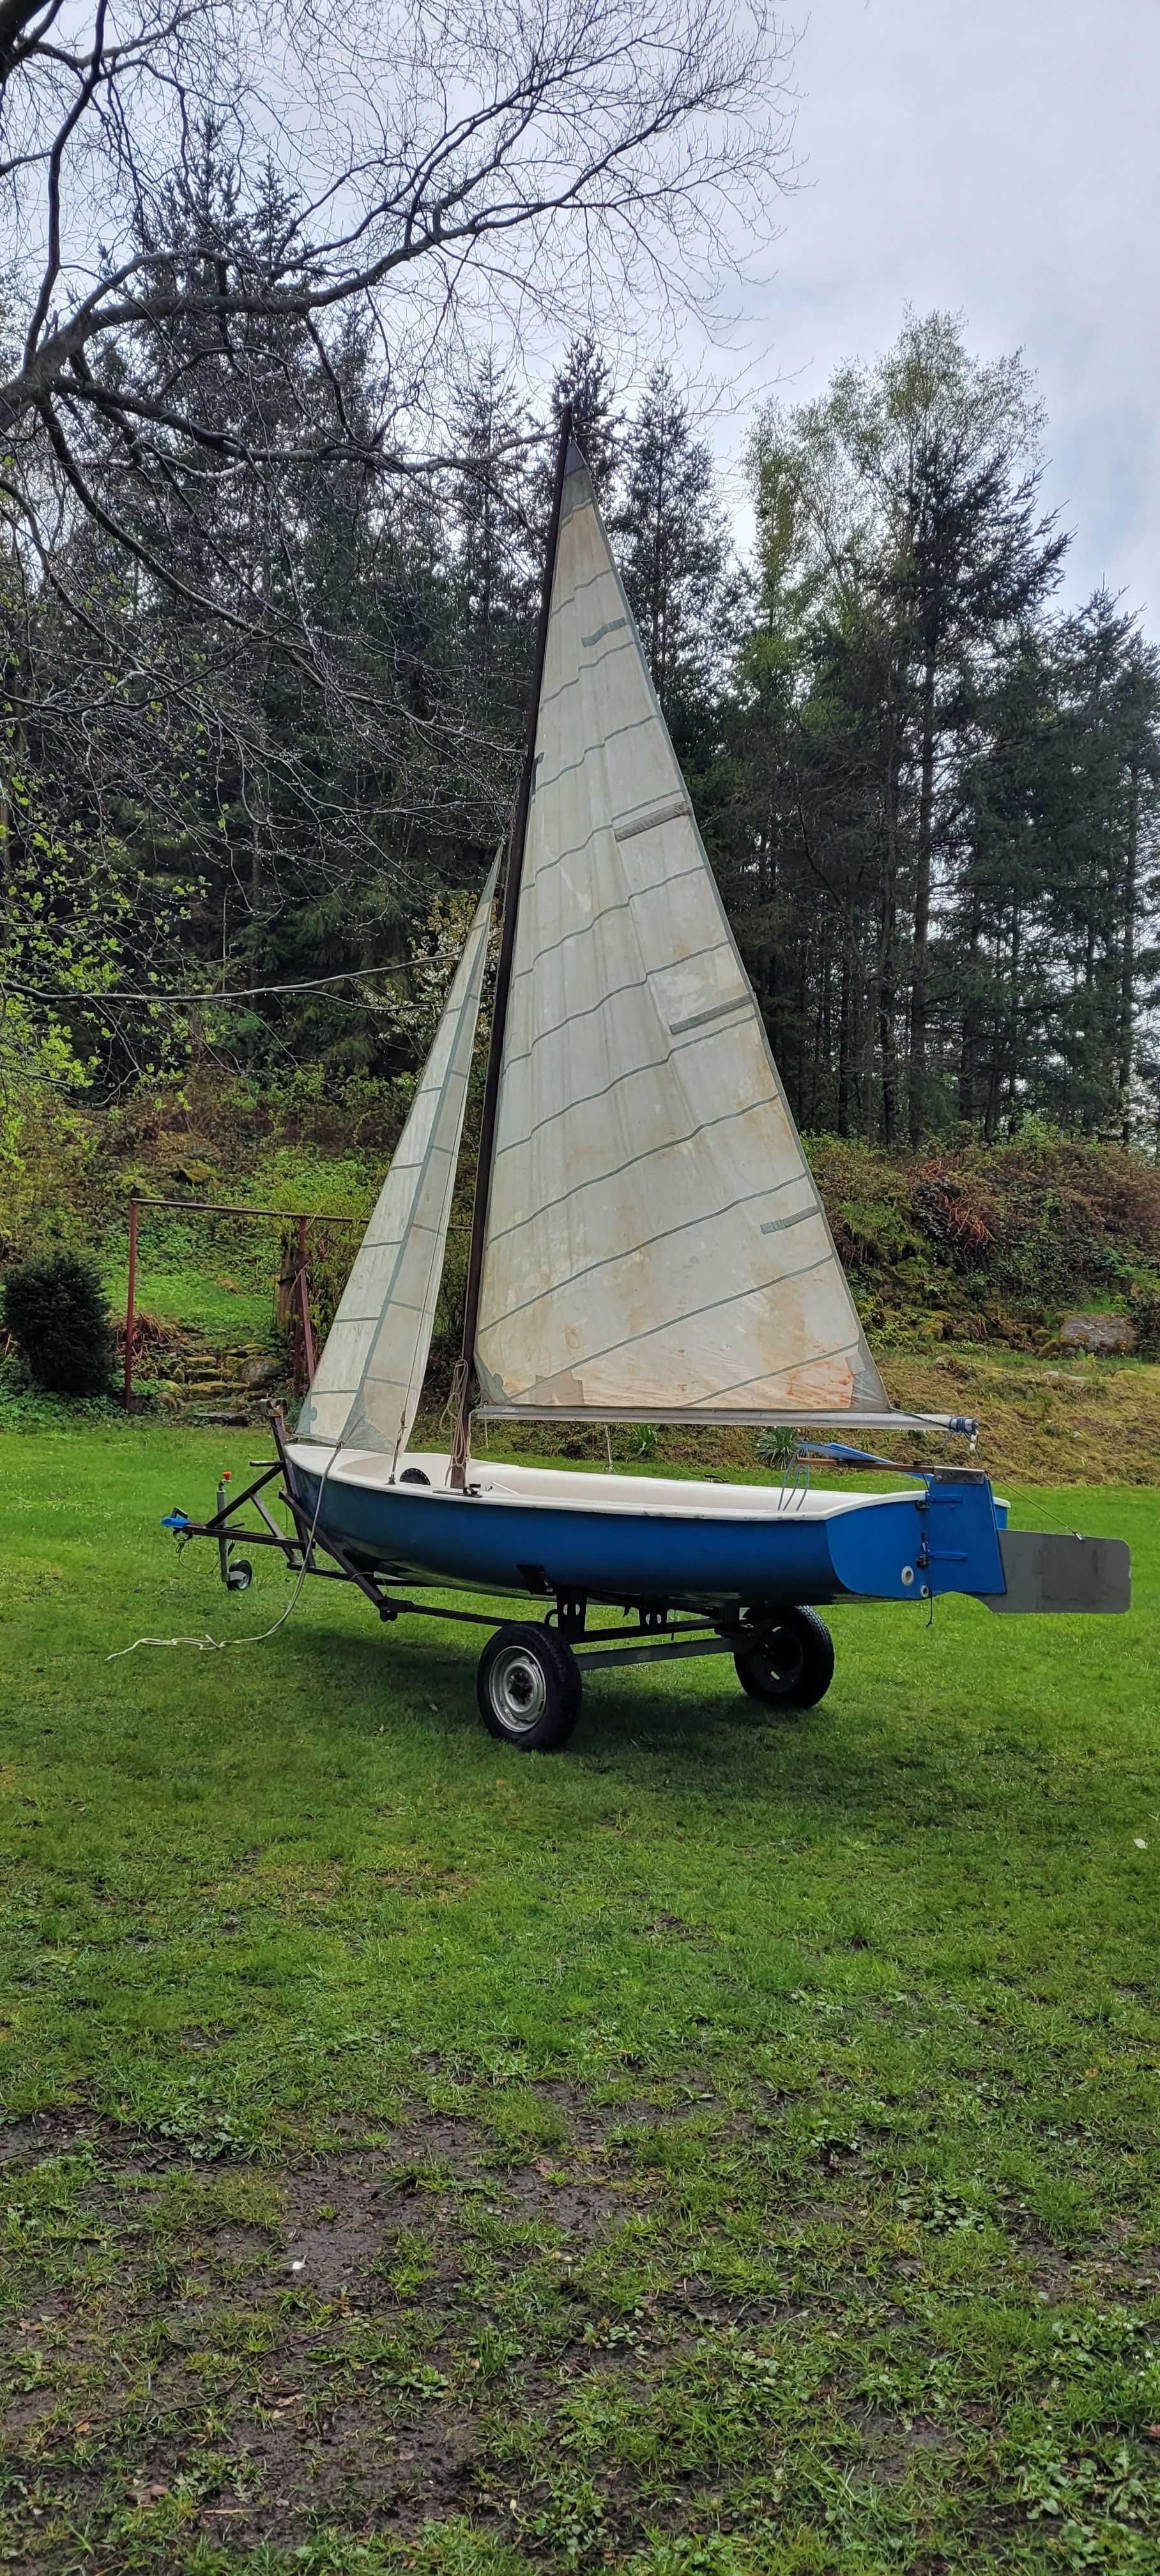 Jacht ,żaglówka łódka holenderska regatowa z przyczepką.